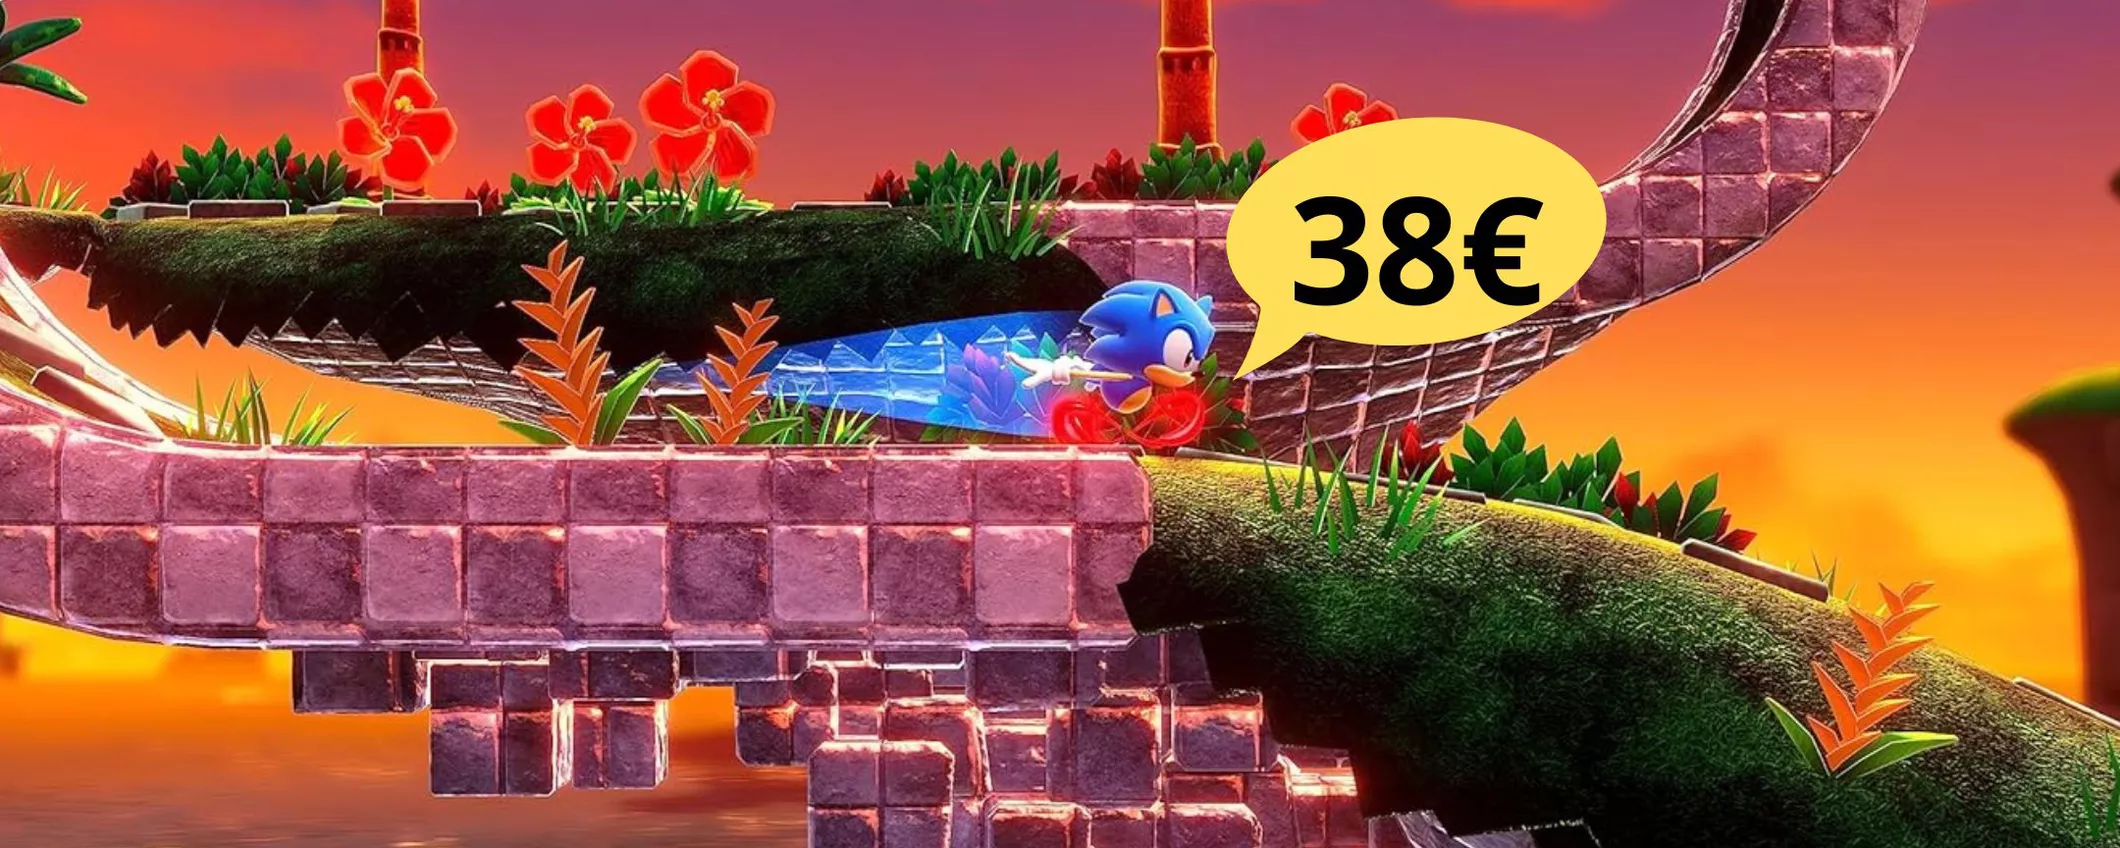 Sonic Superstars per Nintendo Switch: corri più veloce di lui e approfitta dell'OFFERTA!